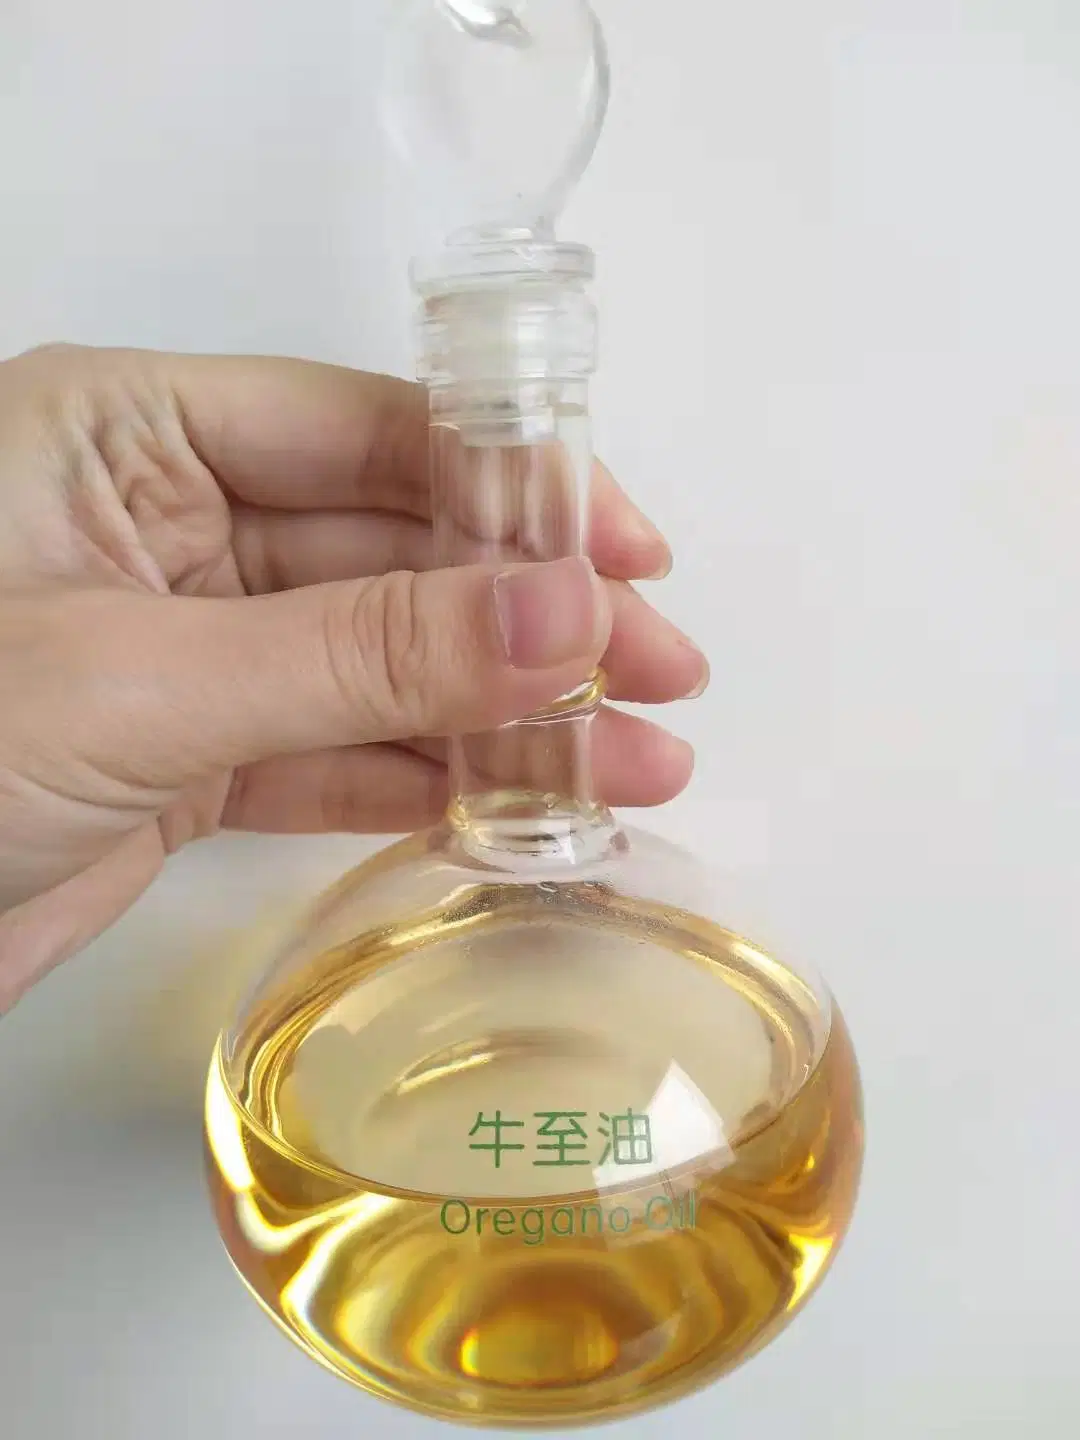 La pura y natural de alimentación de aceite de orégano aditivo con el carvacrol